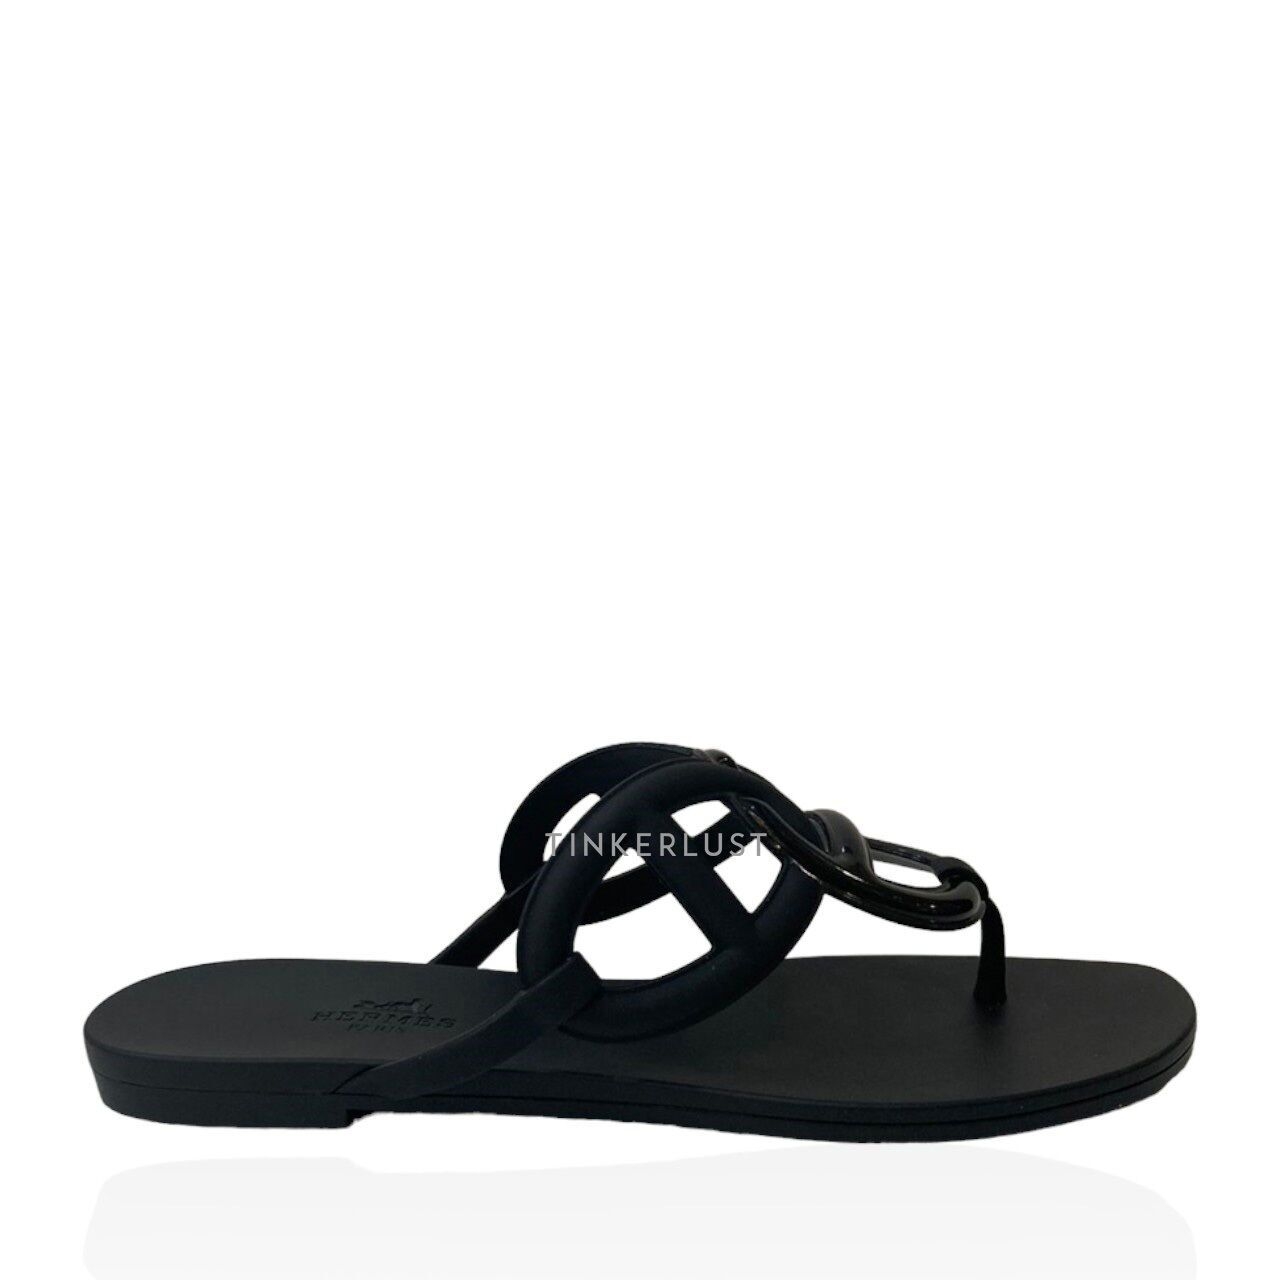 Hermes Egerie Black Sandals